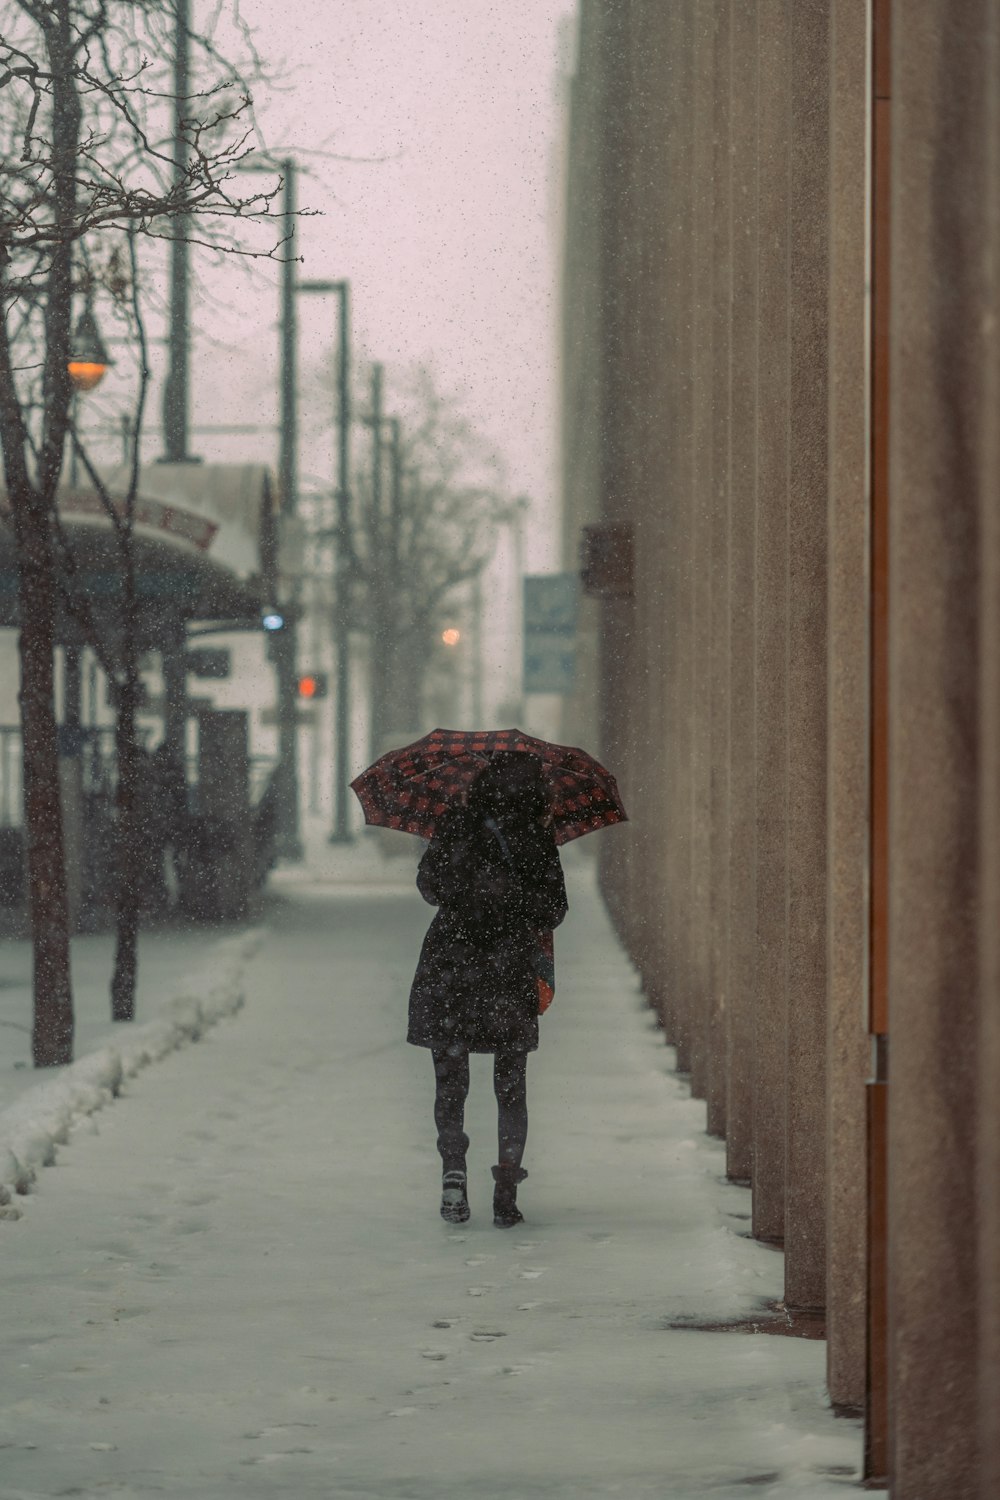 a person walking down a snowy sidewalk with an umbrella